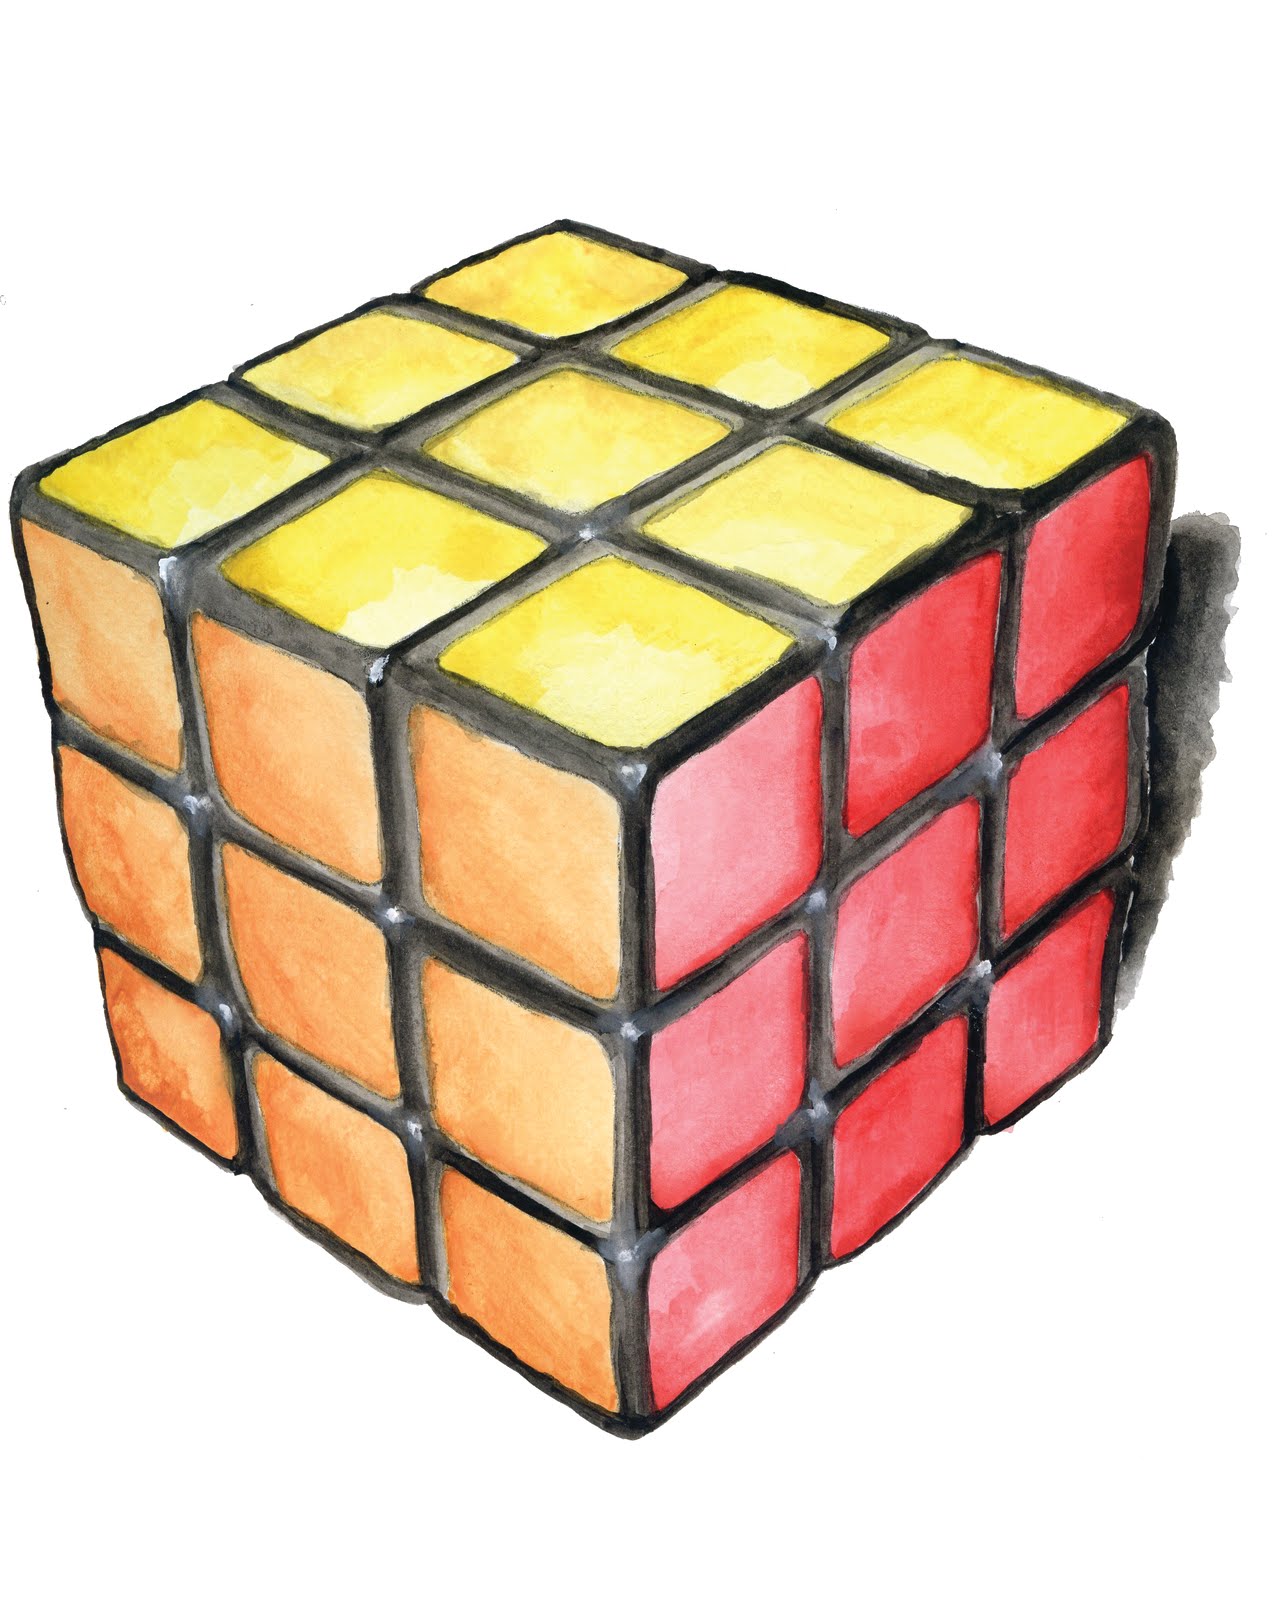 rubix cube illustration